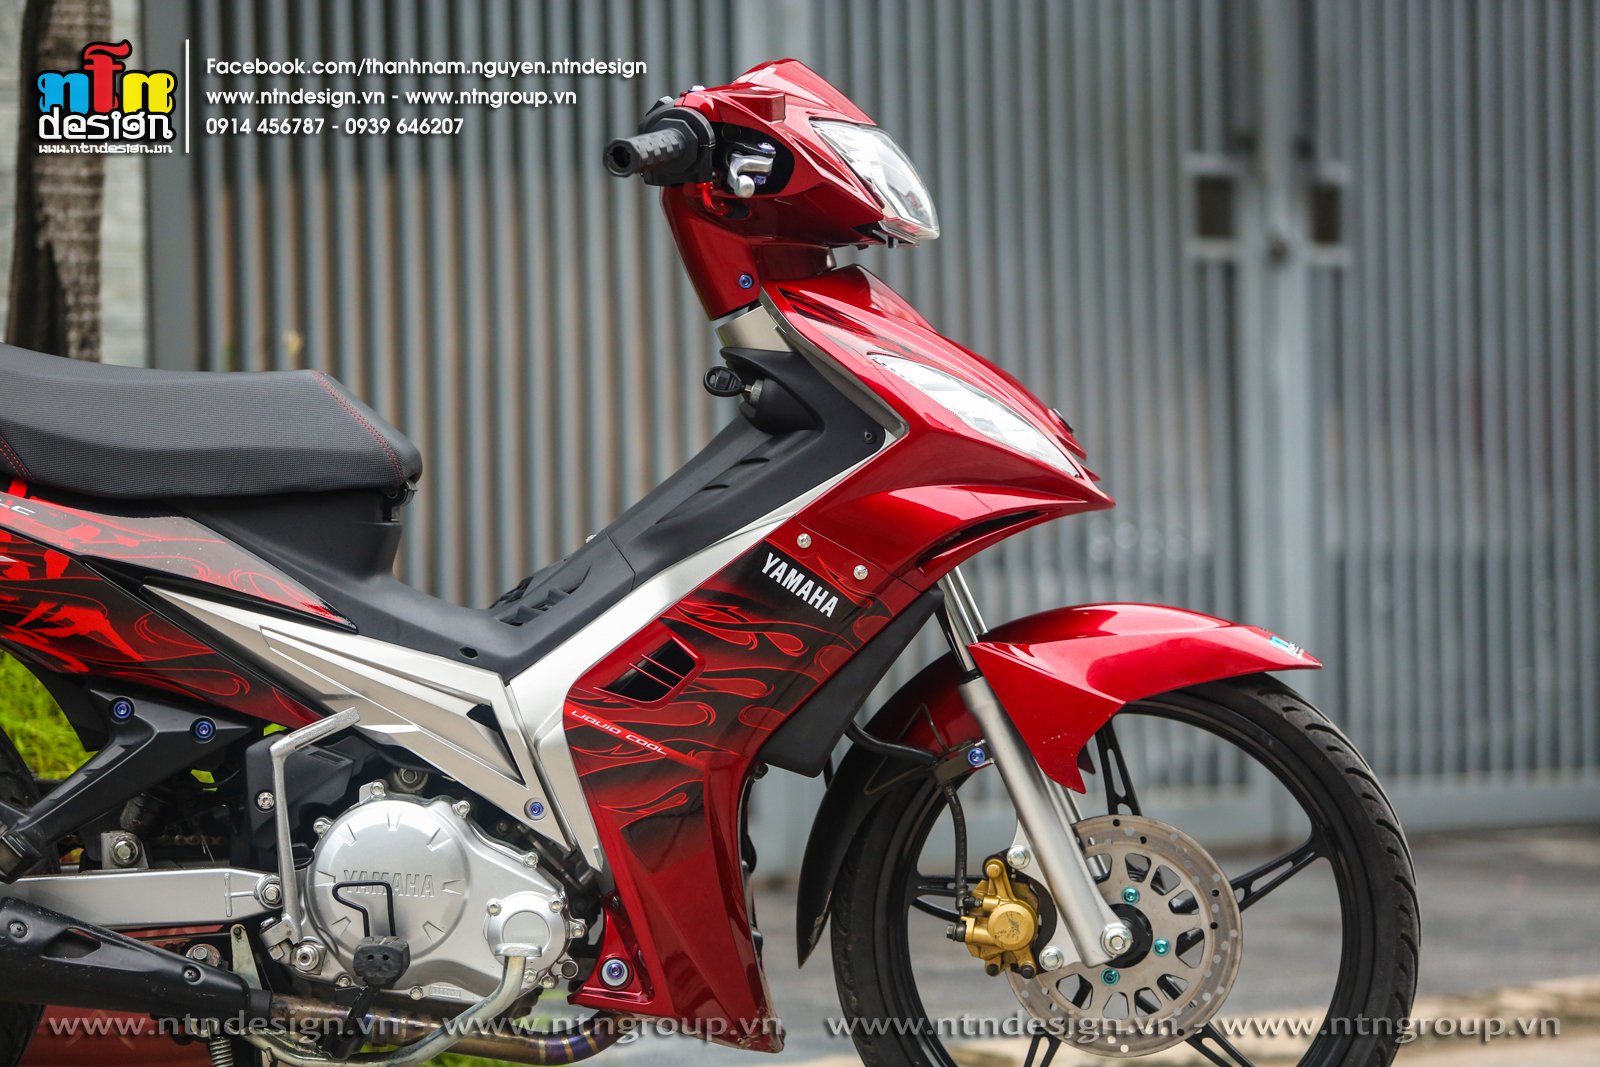 Chi tiết Yamaha Exciter 135 được độ dàn vỏ carbon  Xe thể thao